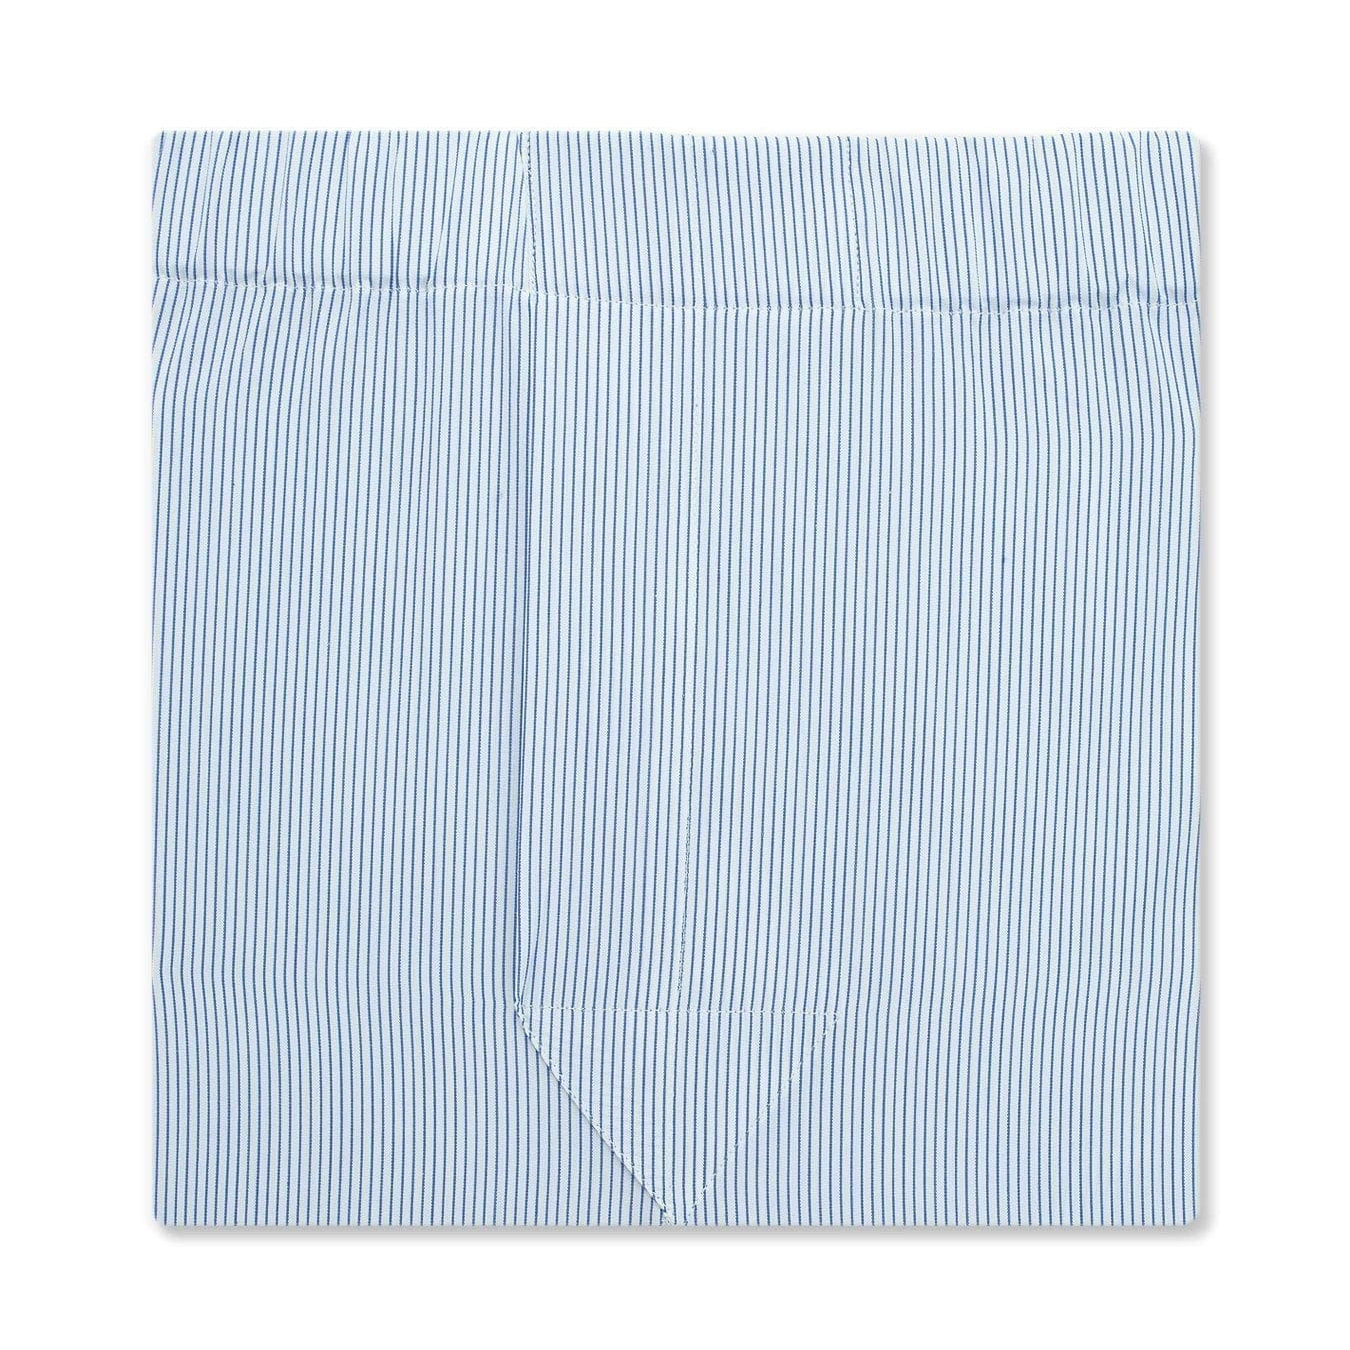 Classic Boxer Shorts in a Mid Blue & White Fine Pinstripe Poplin Cotton